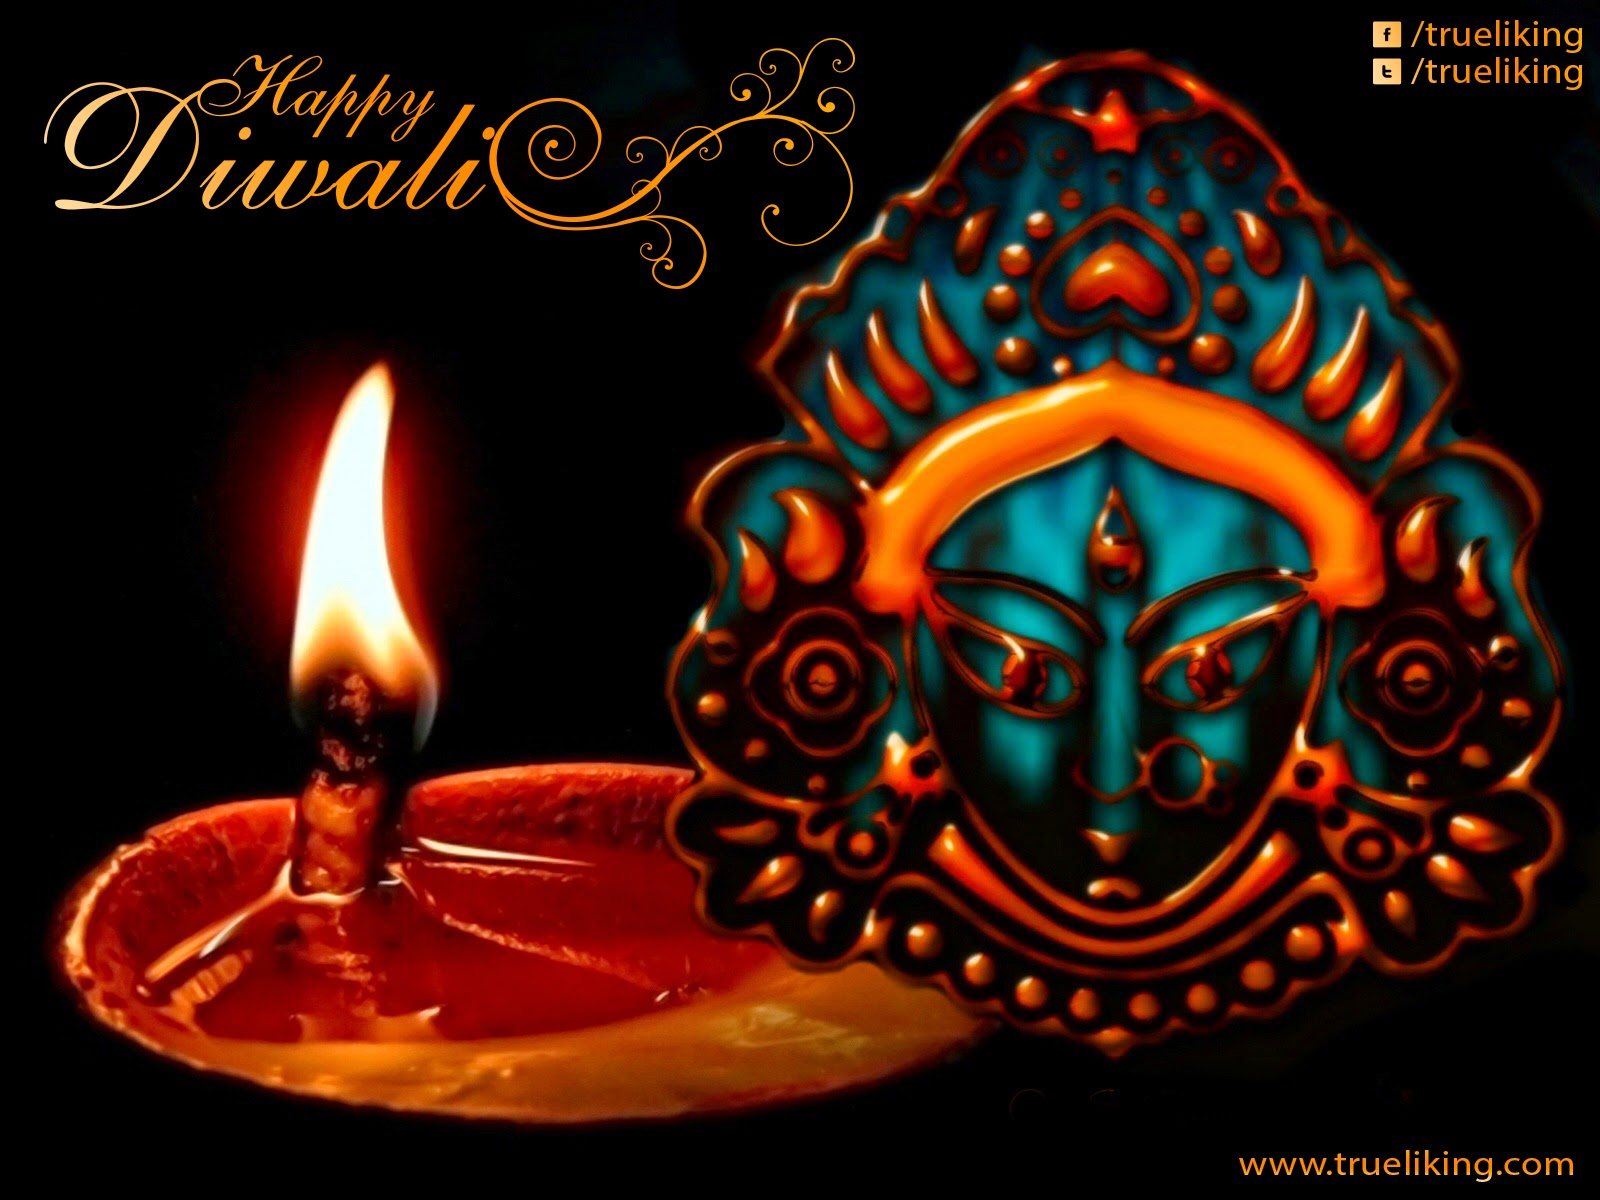 New 2014 Diwali Pictures, Pics And Diwali, Festivals, - Vijaya Dashami , HD Wallpaper & Backgrounds